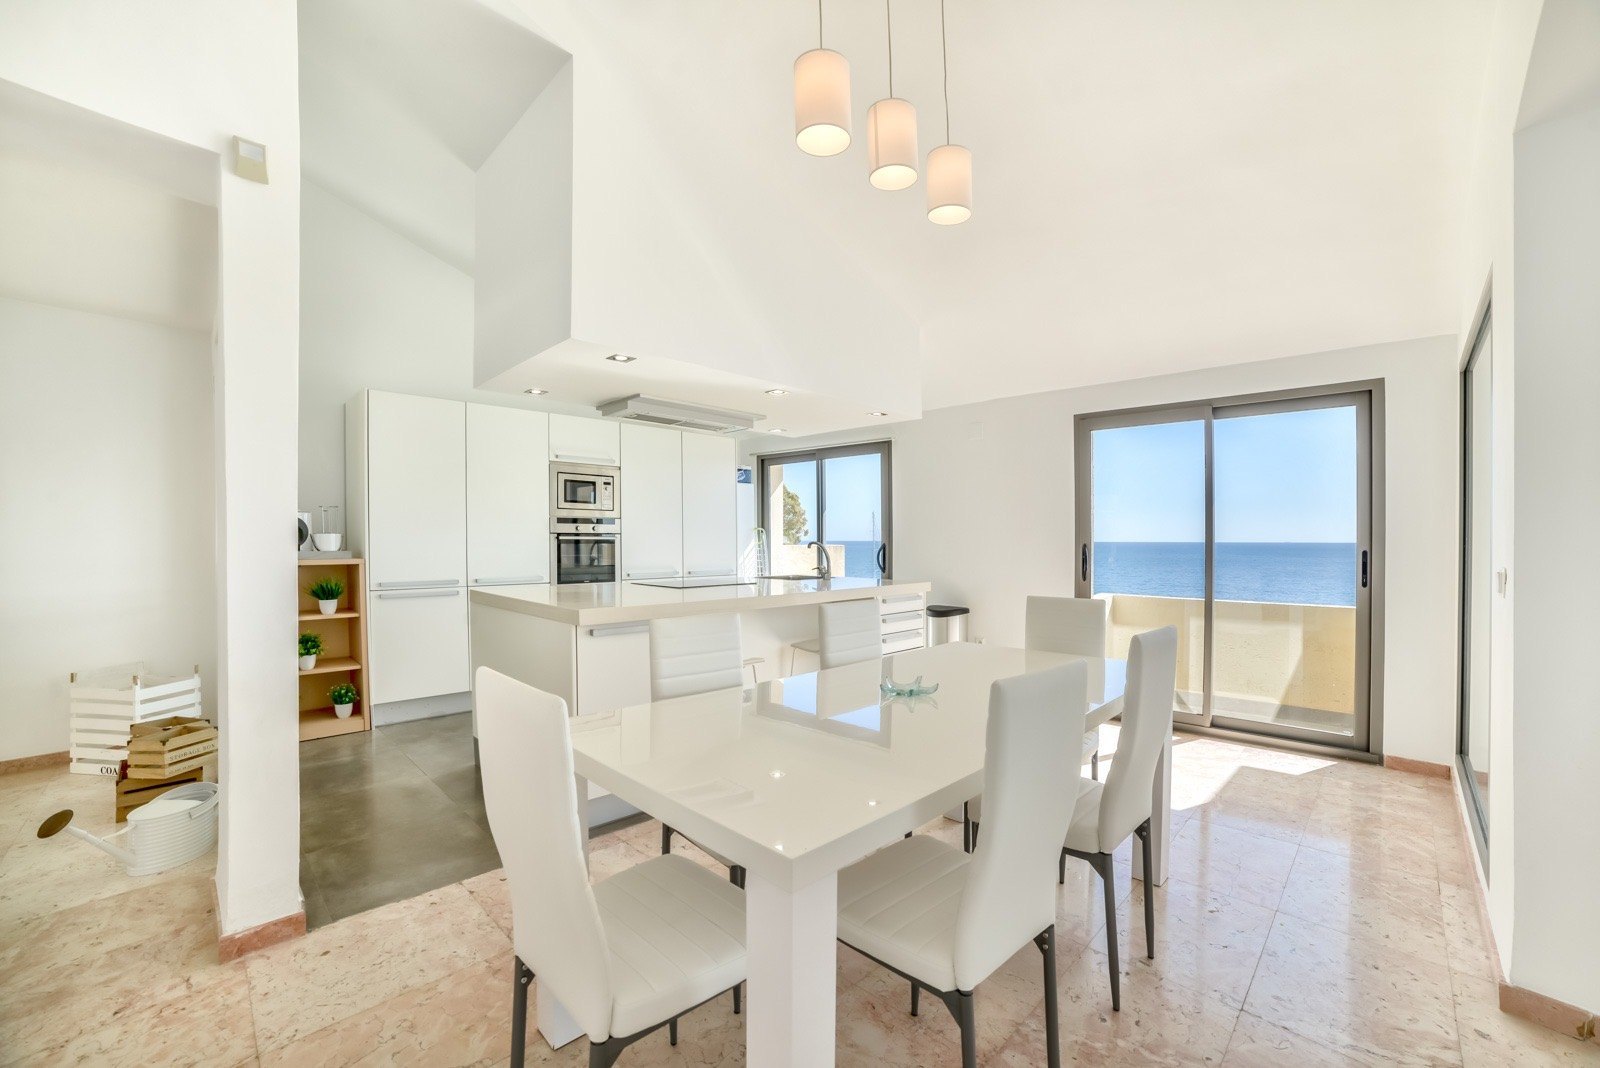 Enorm luxe penthouse met panoramisch uitzicht op zee in Campomanes